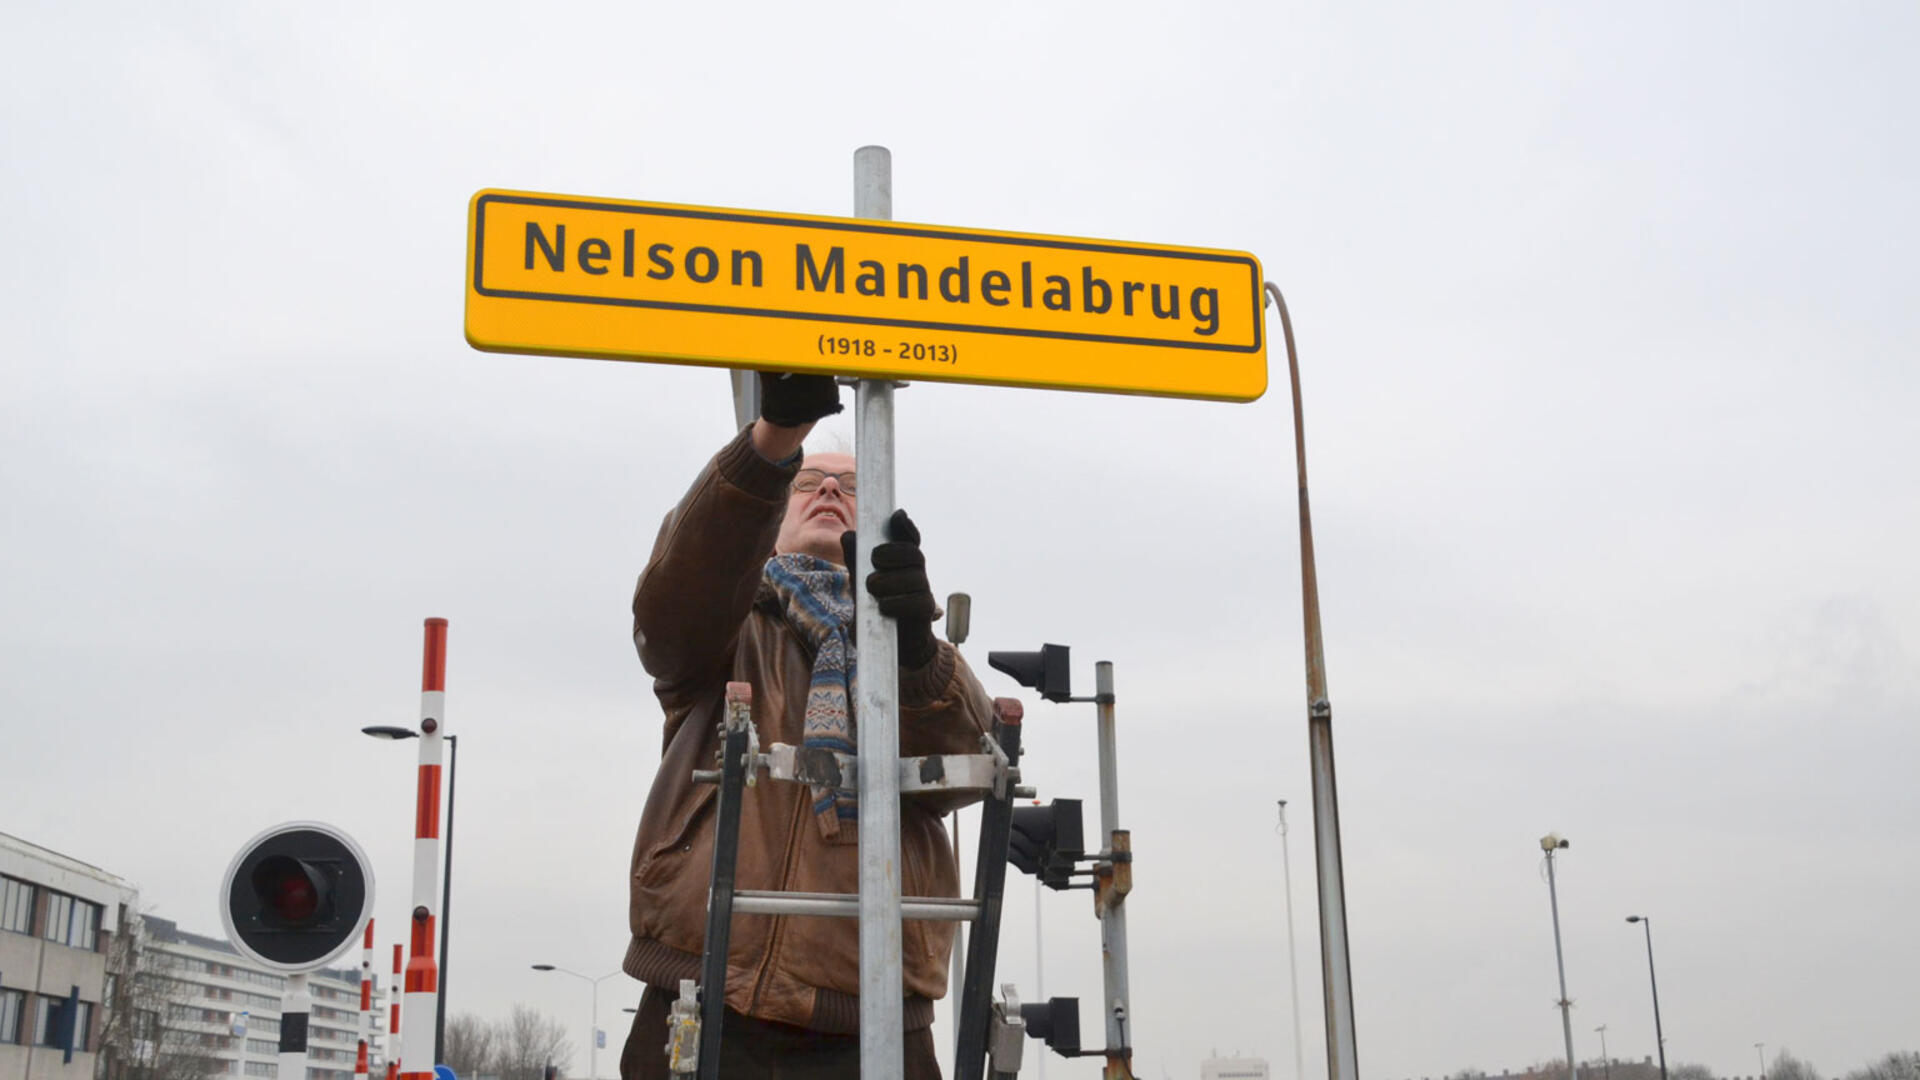 Deltabrug wordt Nelson Mandelabrug - 5 december 2014